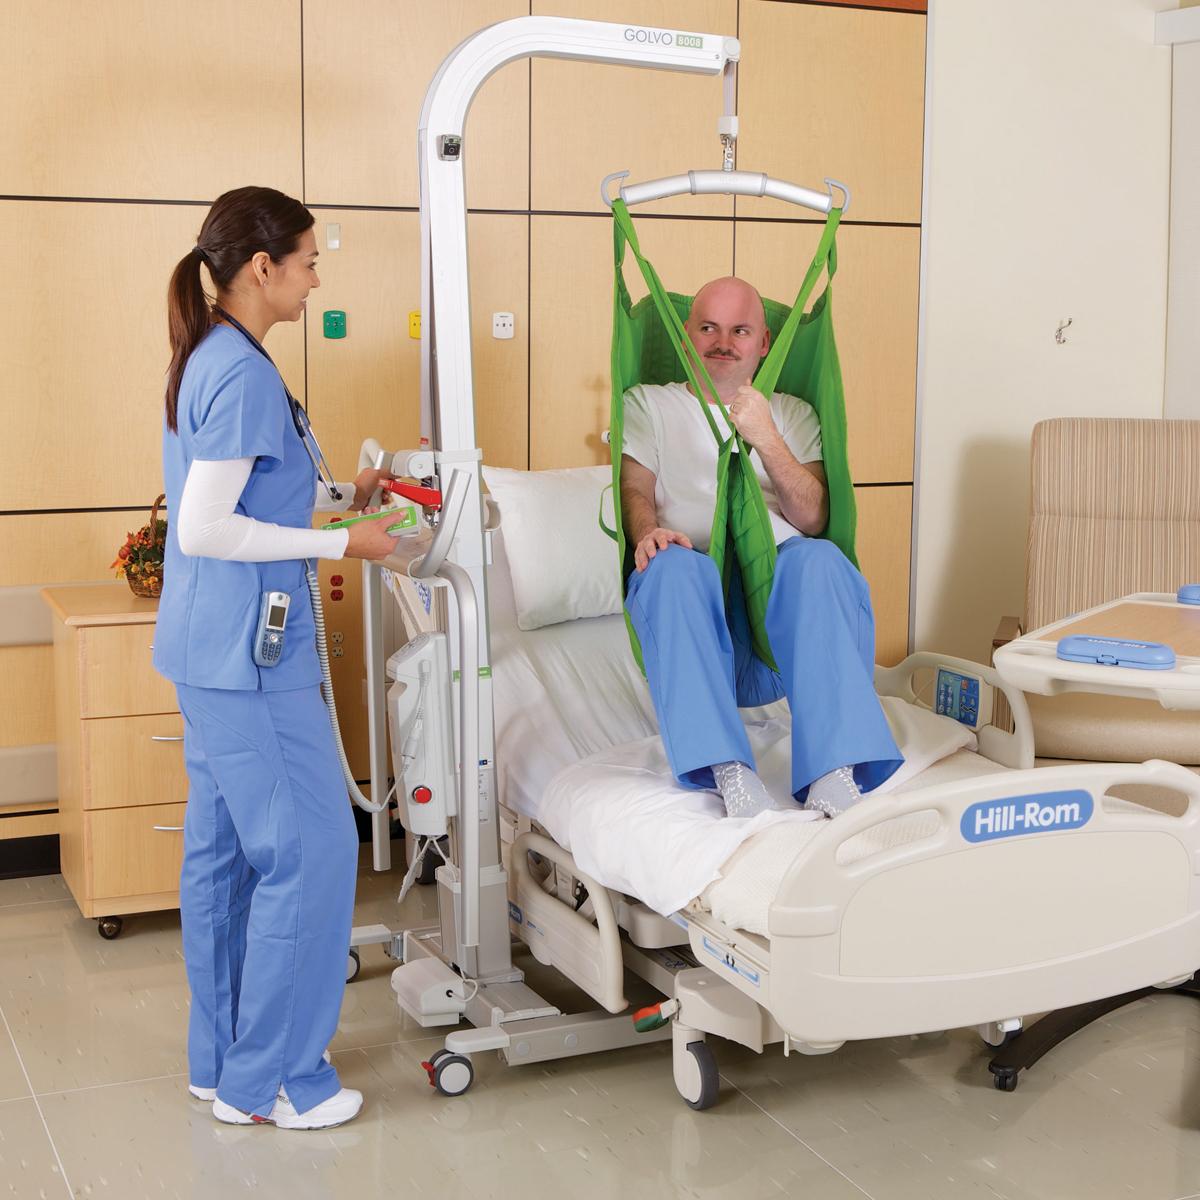 ผู้ป่วยถูกยกขึ้นเหนือเตียงของโรงพยาบาลโดยอุปกรณ์ยกเคลื่อนที่ Golvo ที่ดำเนินการโดยแพทย์